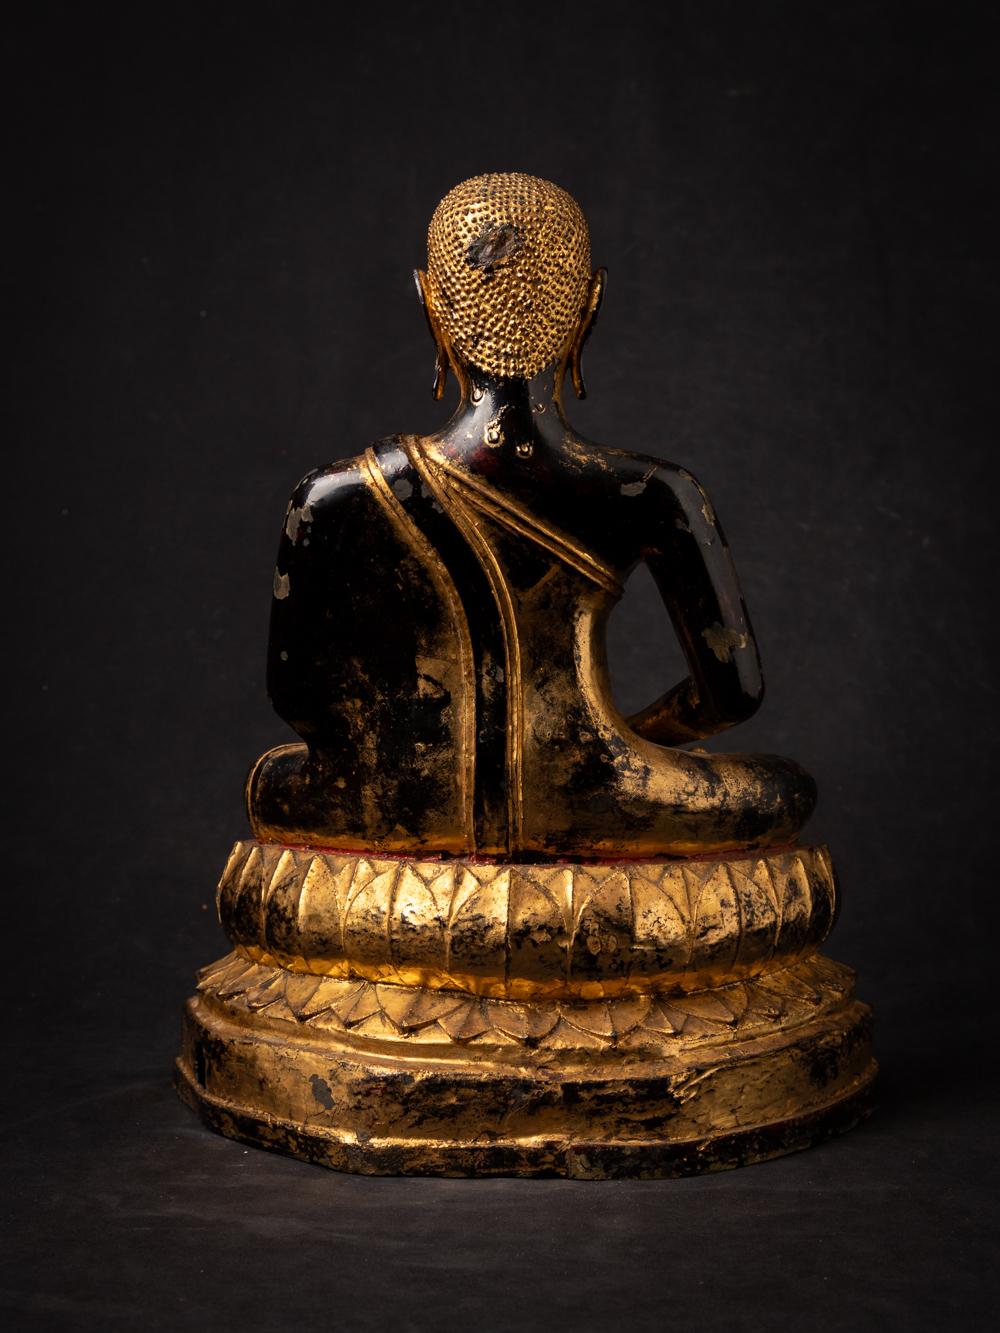 Eine schöne antike Bronze Thai Mönch Statue
MATERIAL : Bronze
37,5 cm hoch
30 cm breit und 17,3 cm tief
Vergoldet mit 24 krt. Gold
Dhyana Mudra
19. Jahrhundert
Gewicht: 10,2 kg
Mit Ursprung in Thailand
Nr: 3819